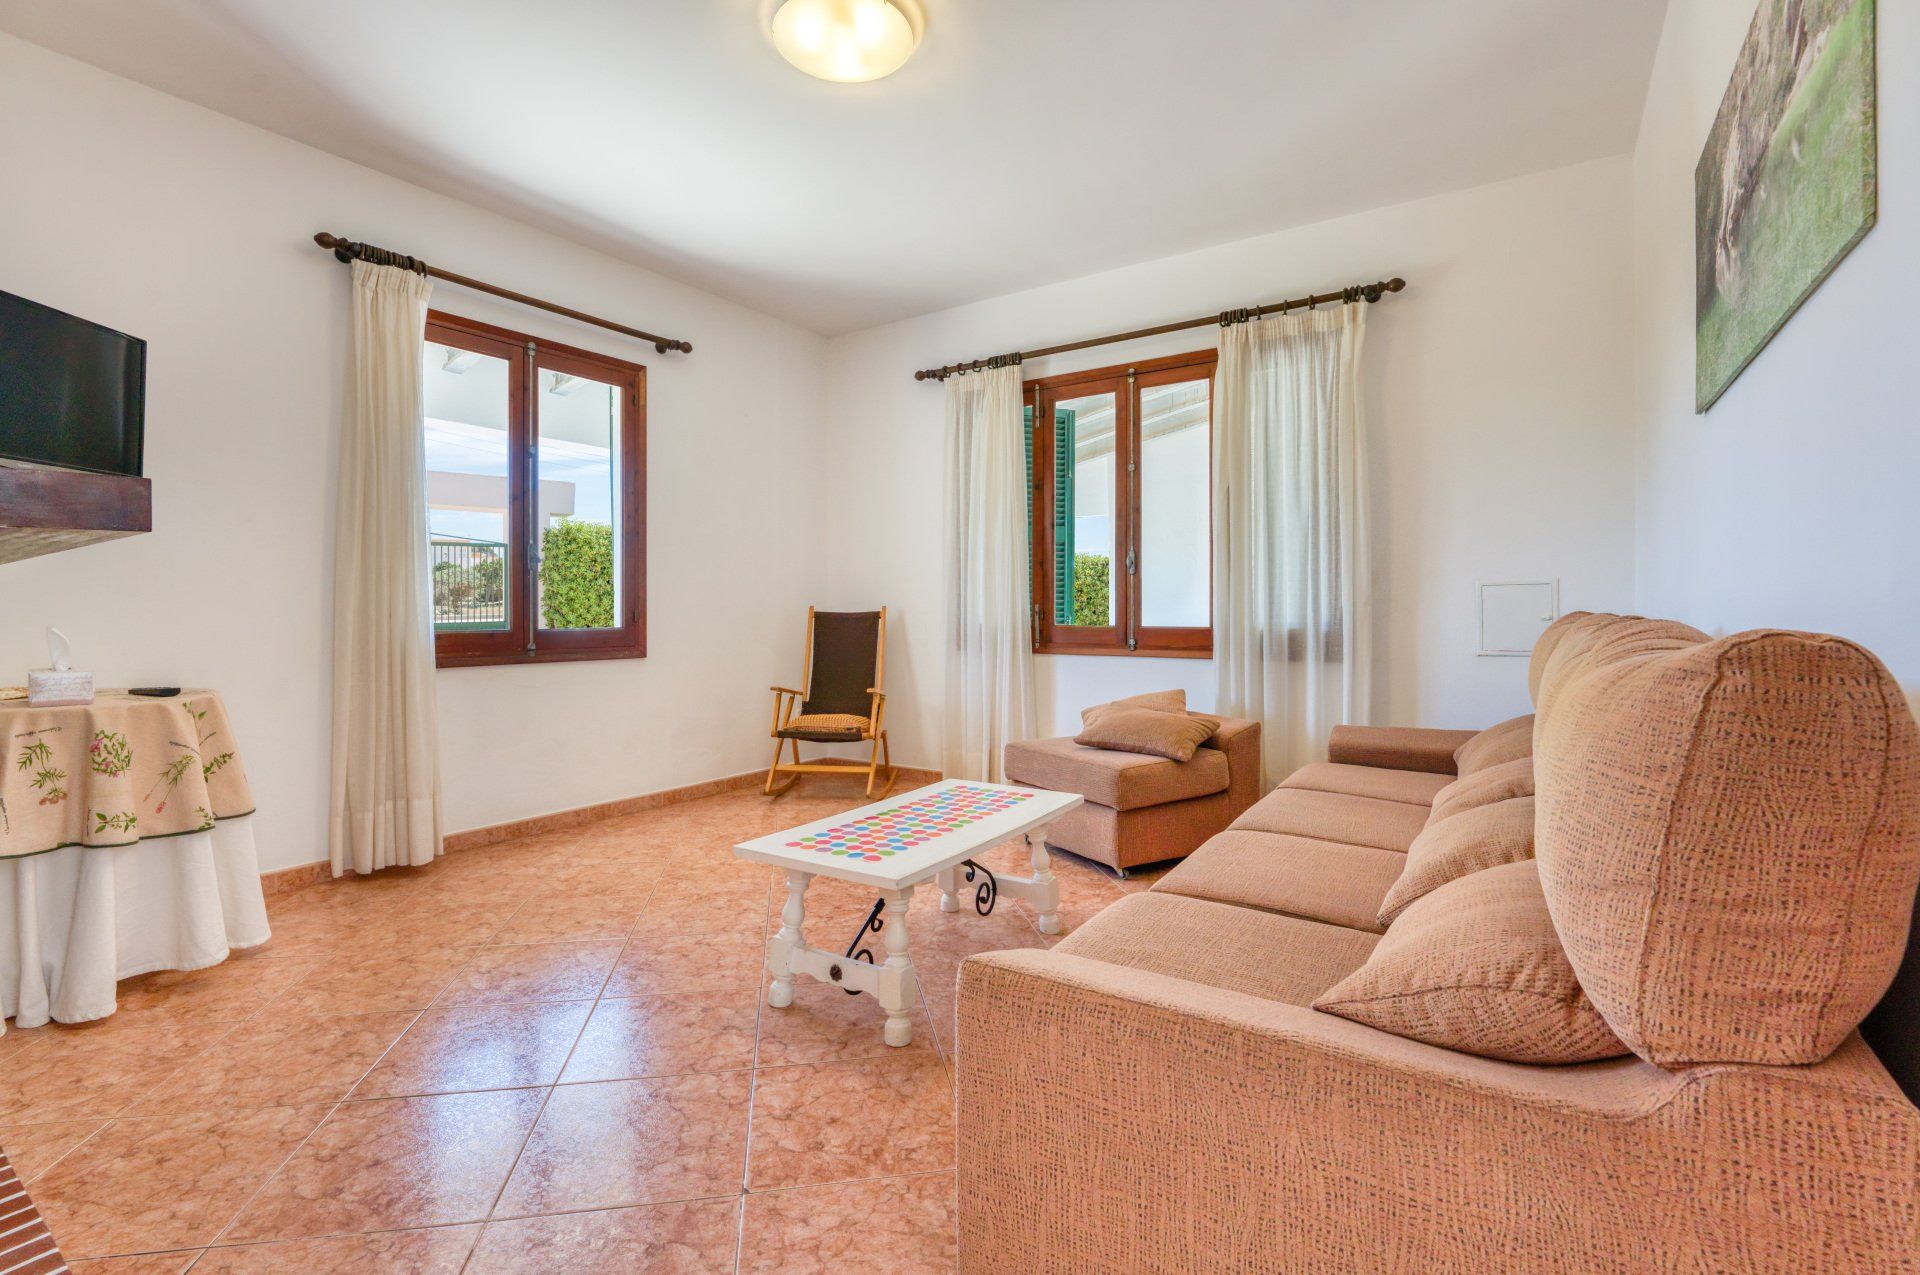 Foto del salón de Villa Mascaró, casa de alquiler de vacaciones en Menorca.